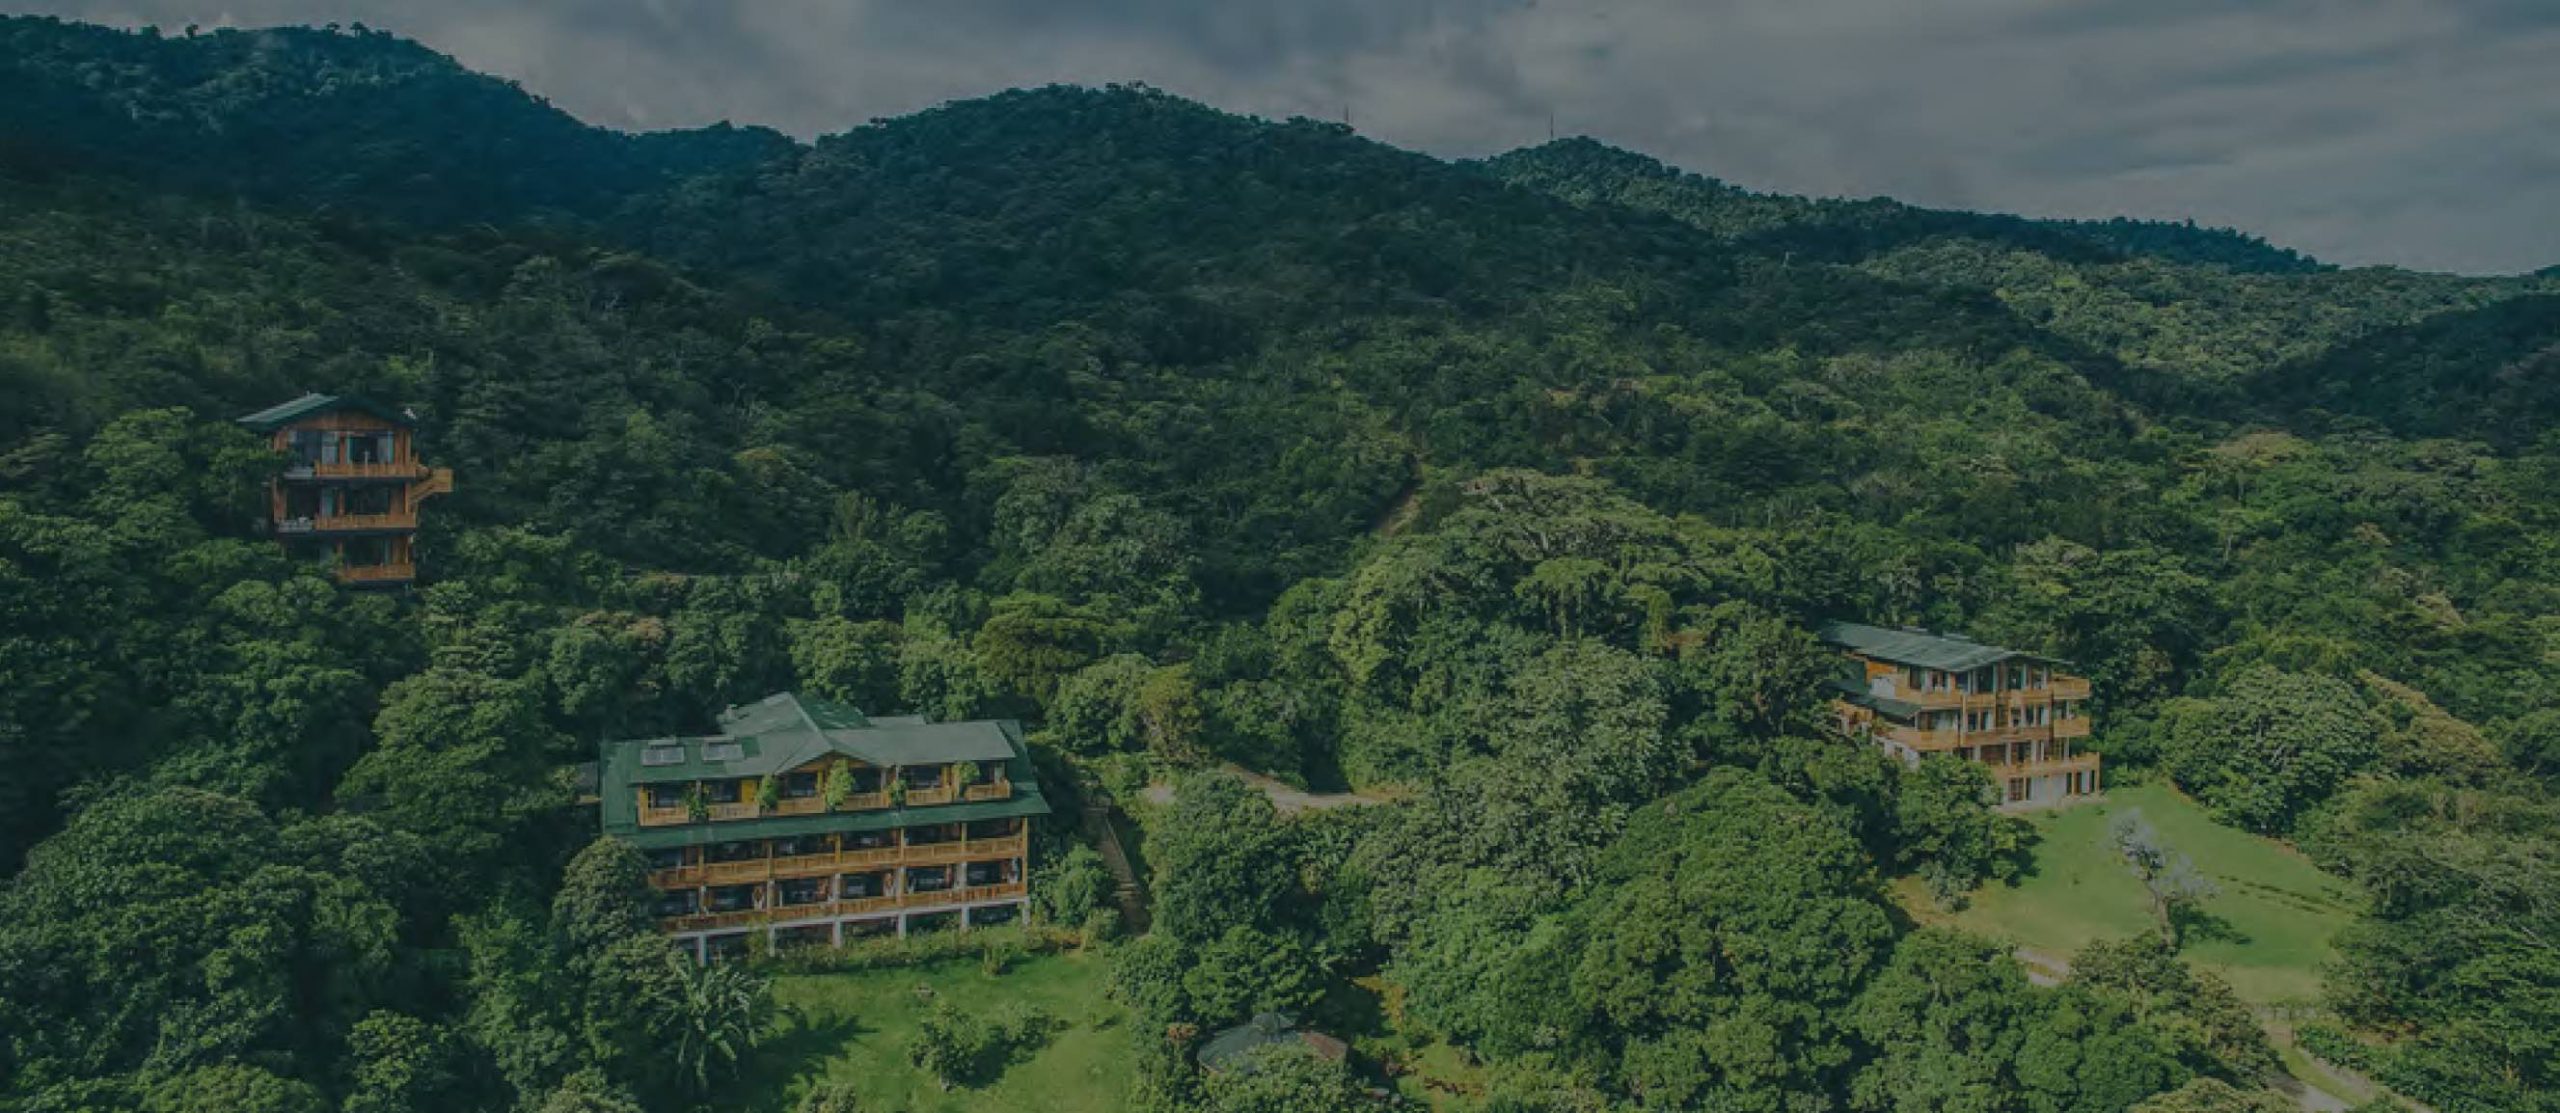 Costa Rica: Savia introduce una aventura con propósito